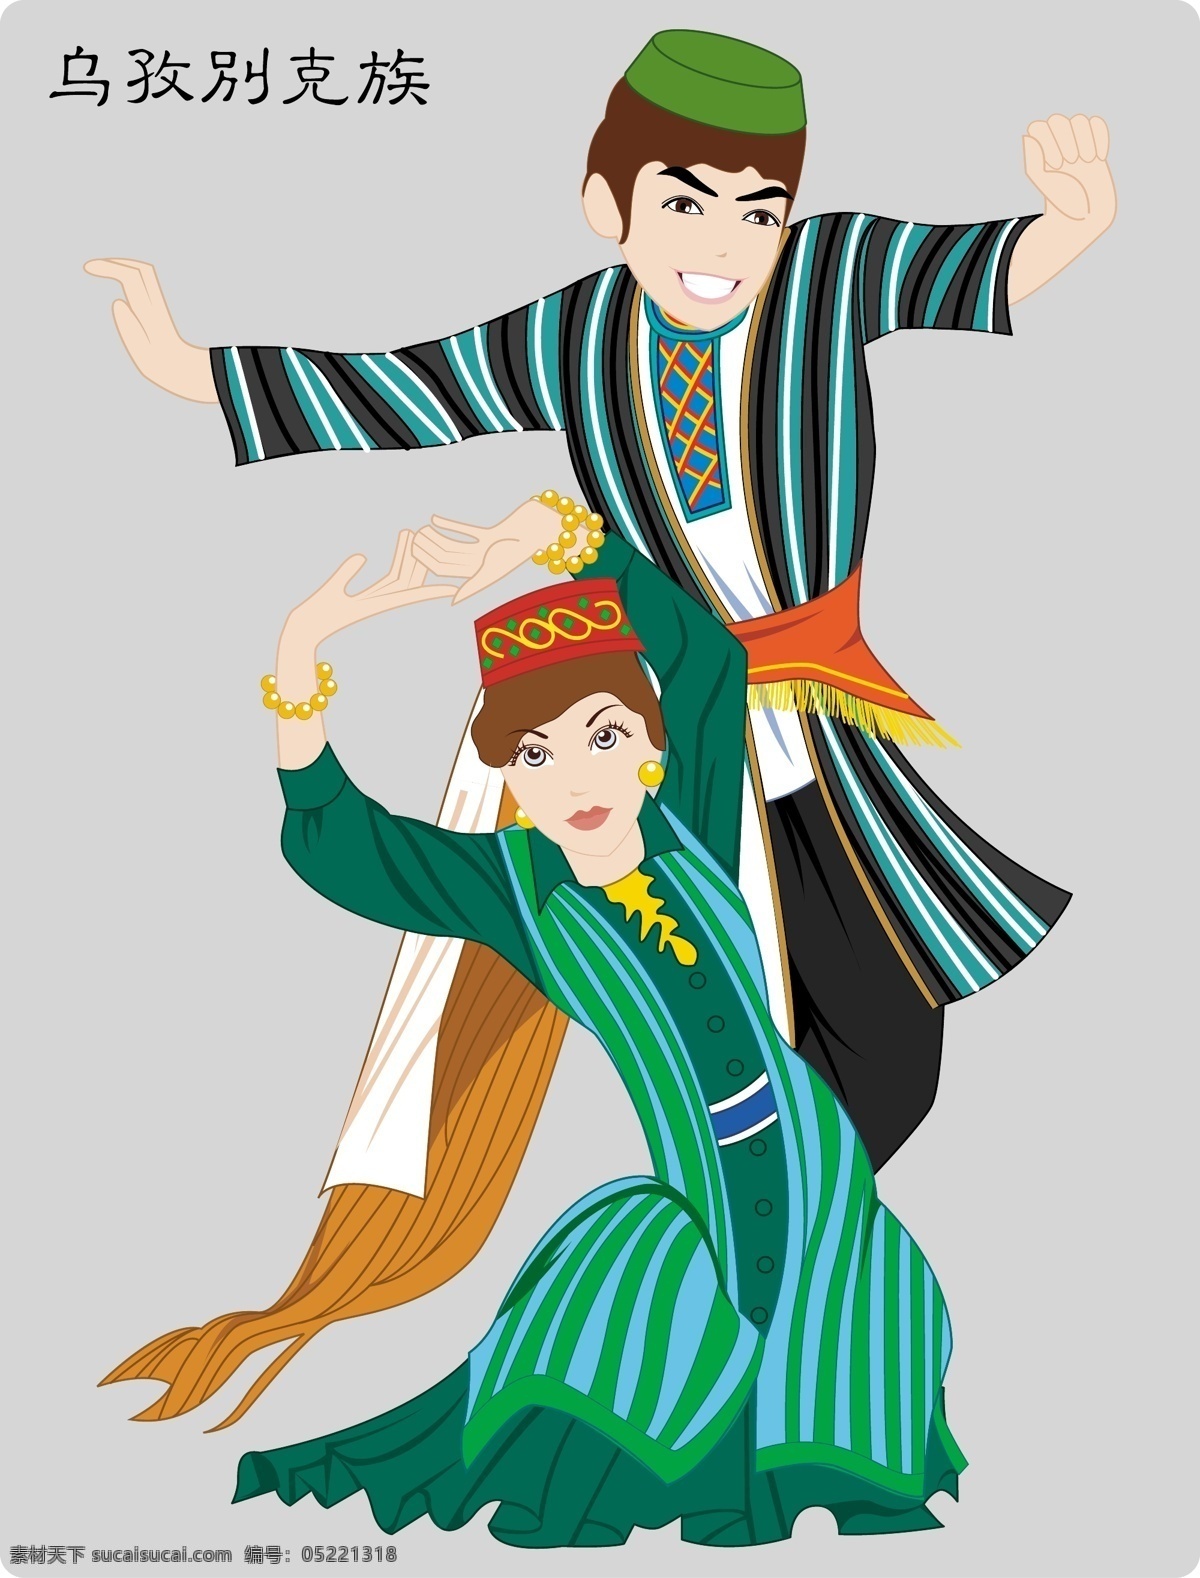 56个民族 服饰 卡通 卡通人物 漫画 民族 民族文化 民族舞 其他人物 乌孜别克族 少数民族 民族舞蹈 舞蹈 民族风俗 民族人物 人物 舞蹈人物 少数民族人物 矢量 矢量人物 矢量图库 psd源文件